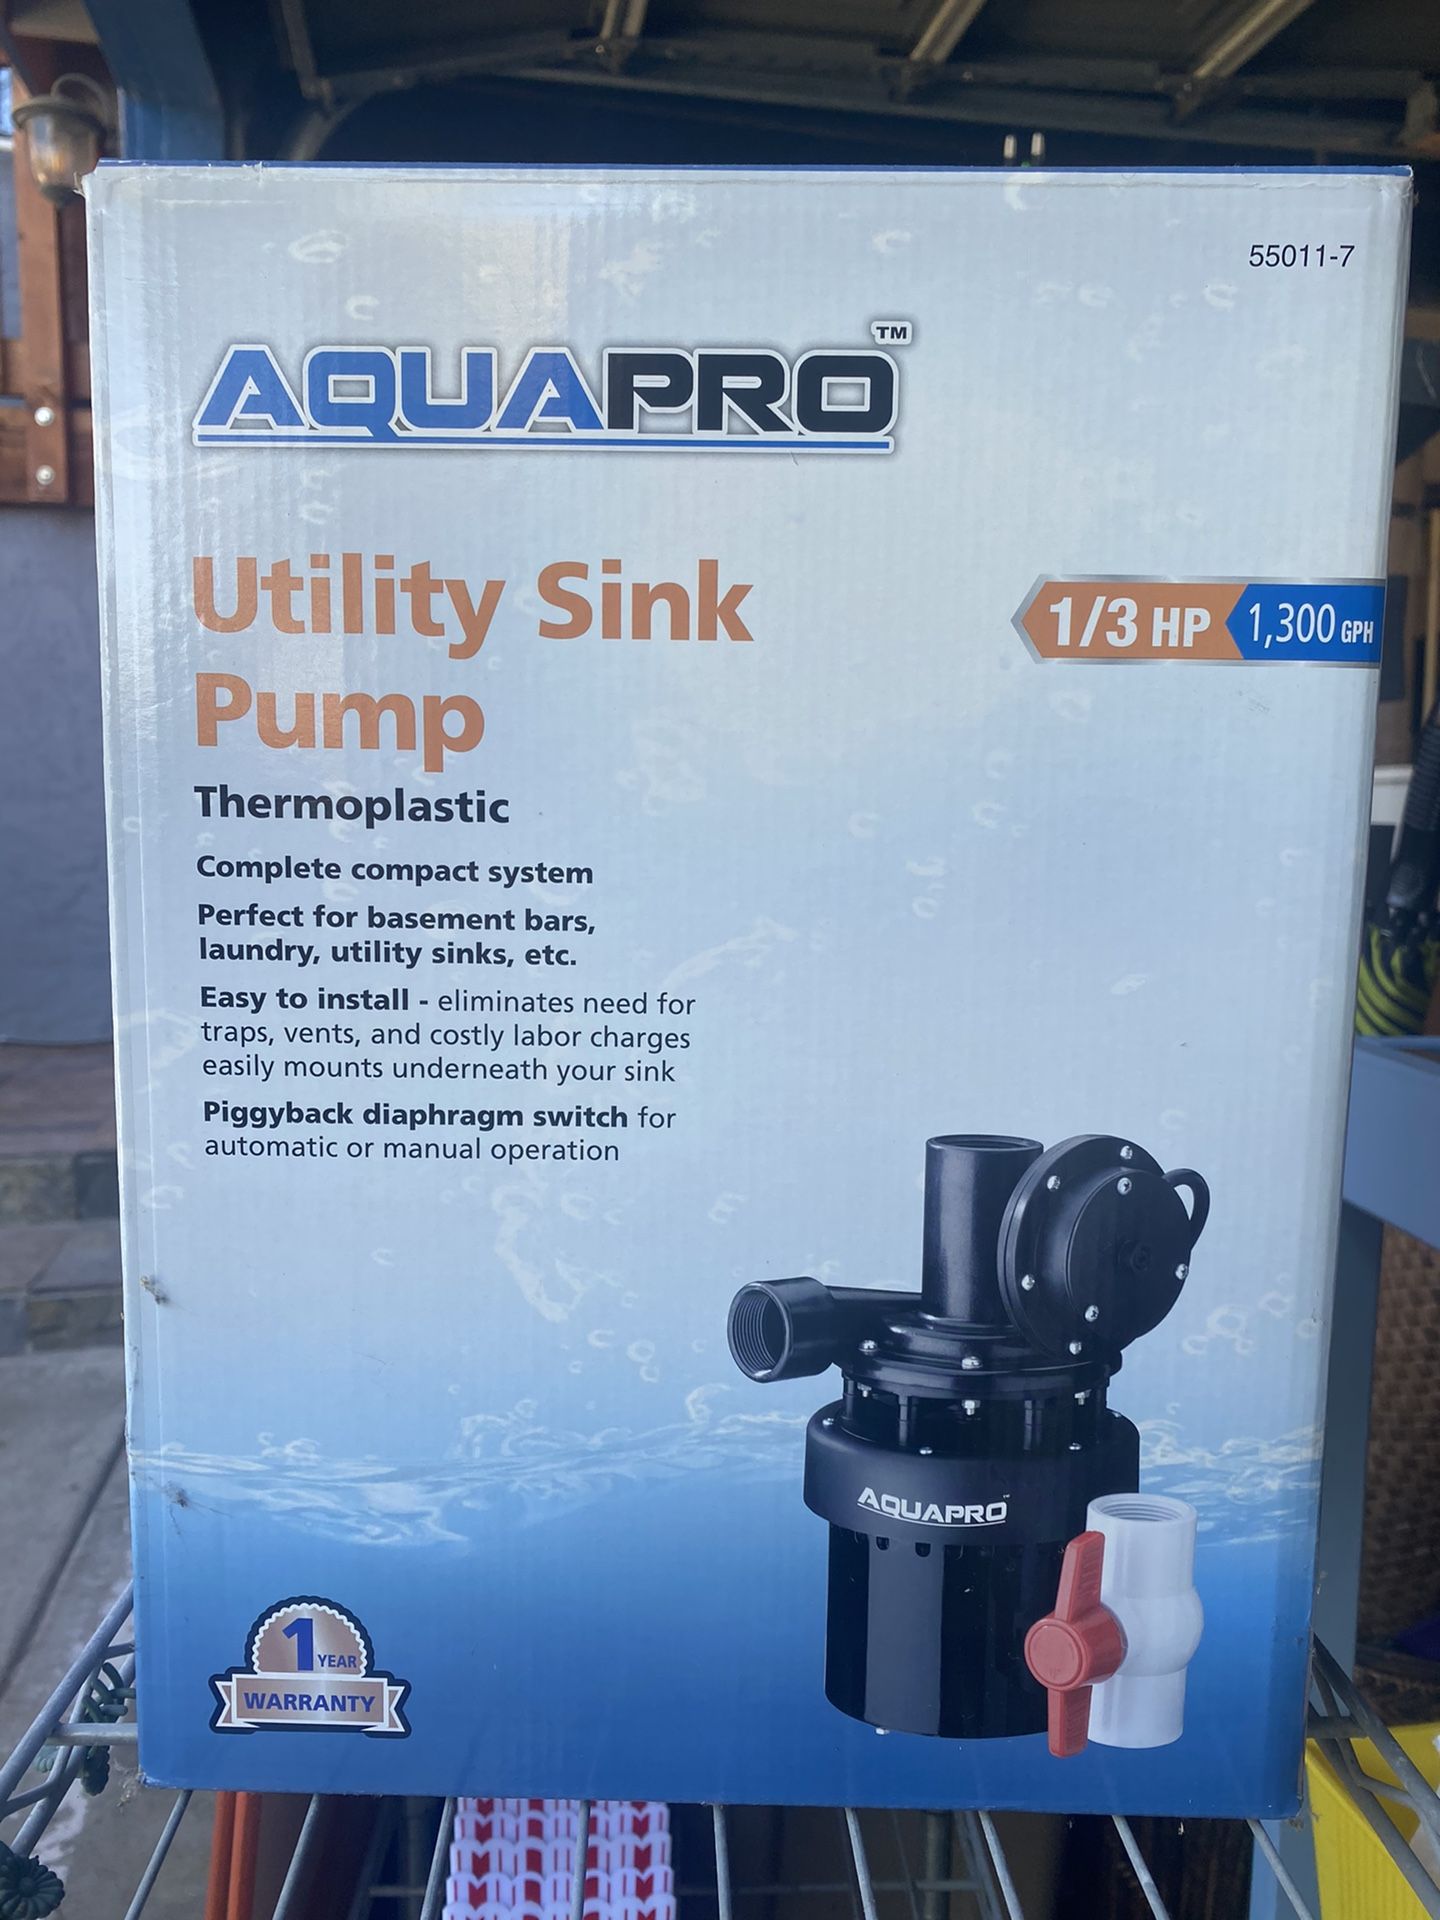 Utility sink pump